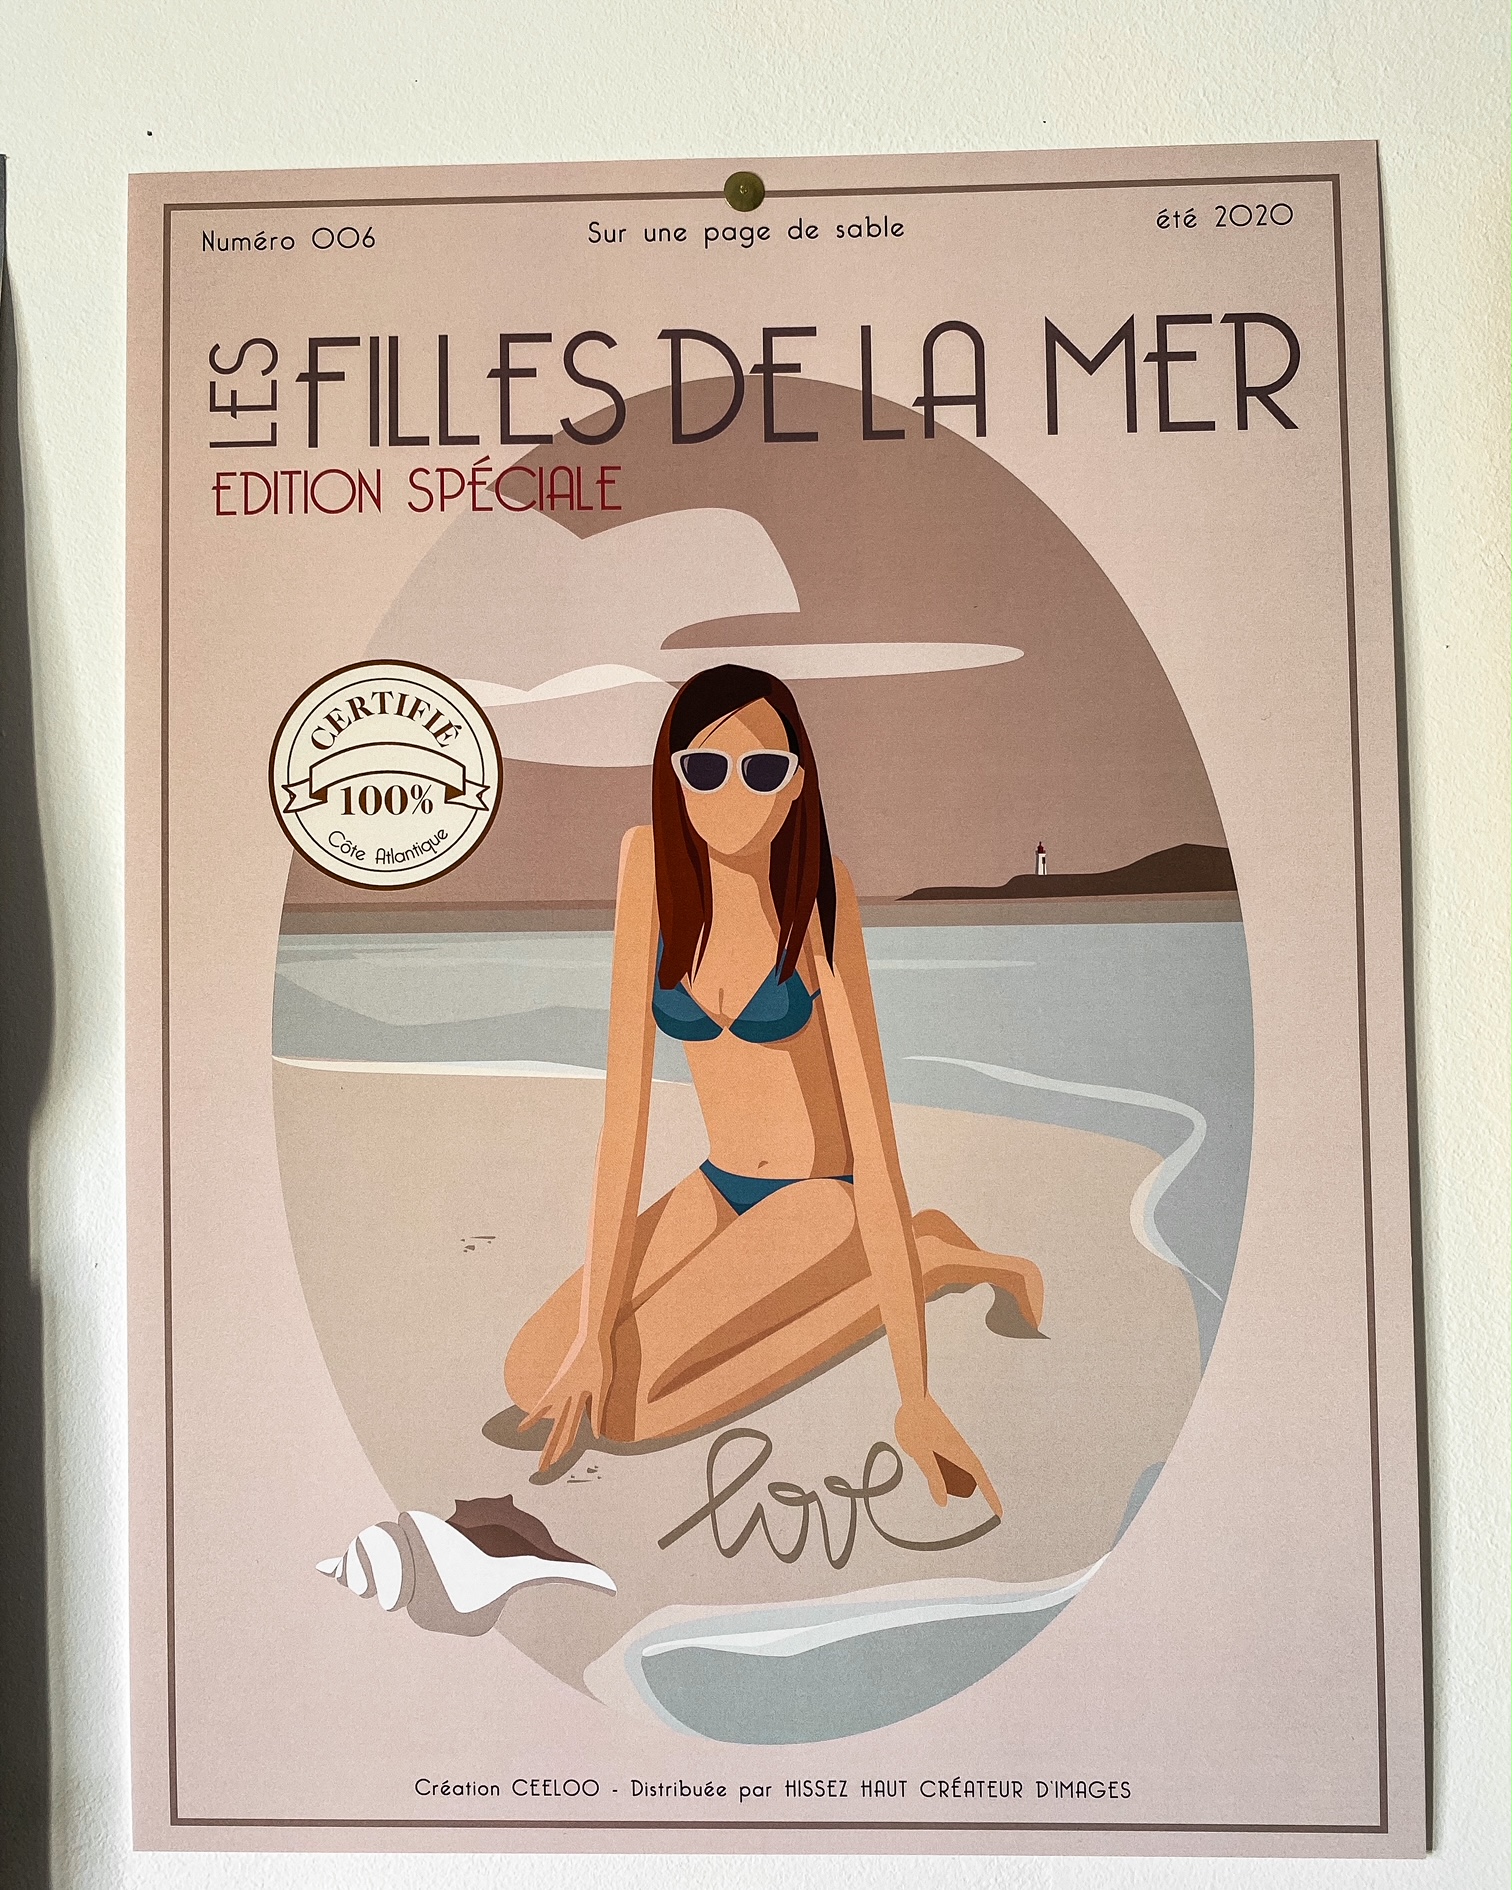 Une affiche "les filles de la mer" ; dessin d'une femme brune en maillot de bain assise sur une plage ; elle a écrit "love" sur le sable